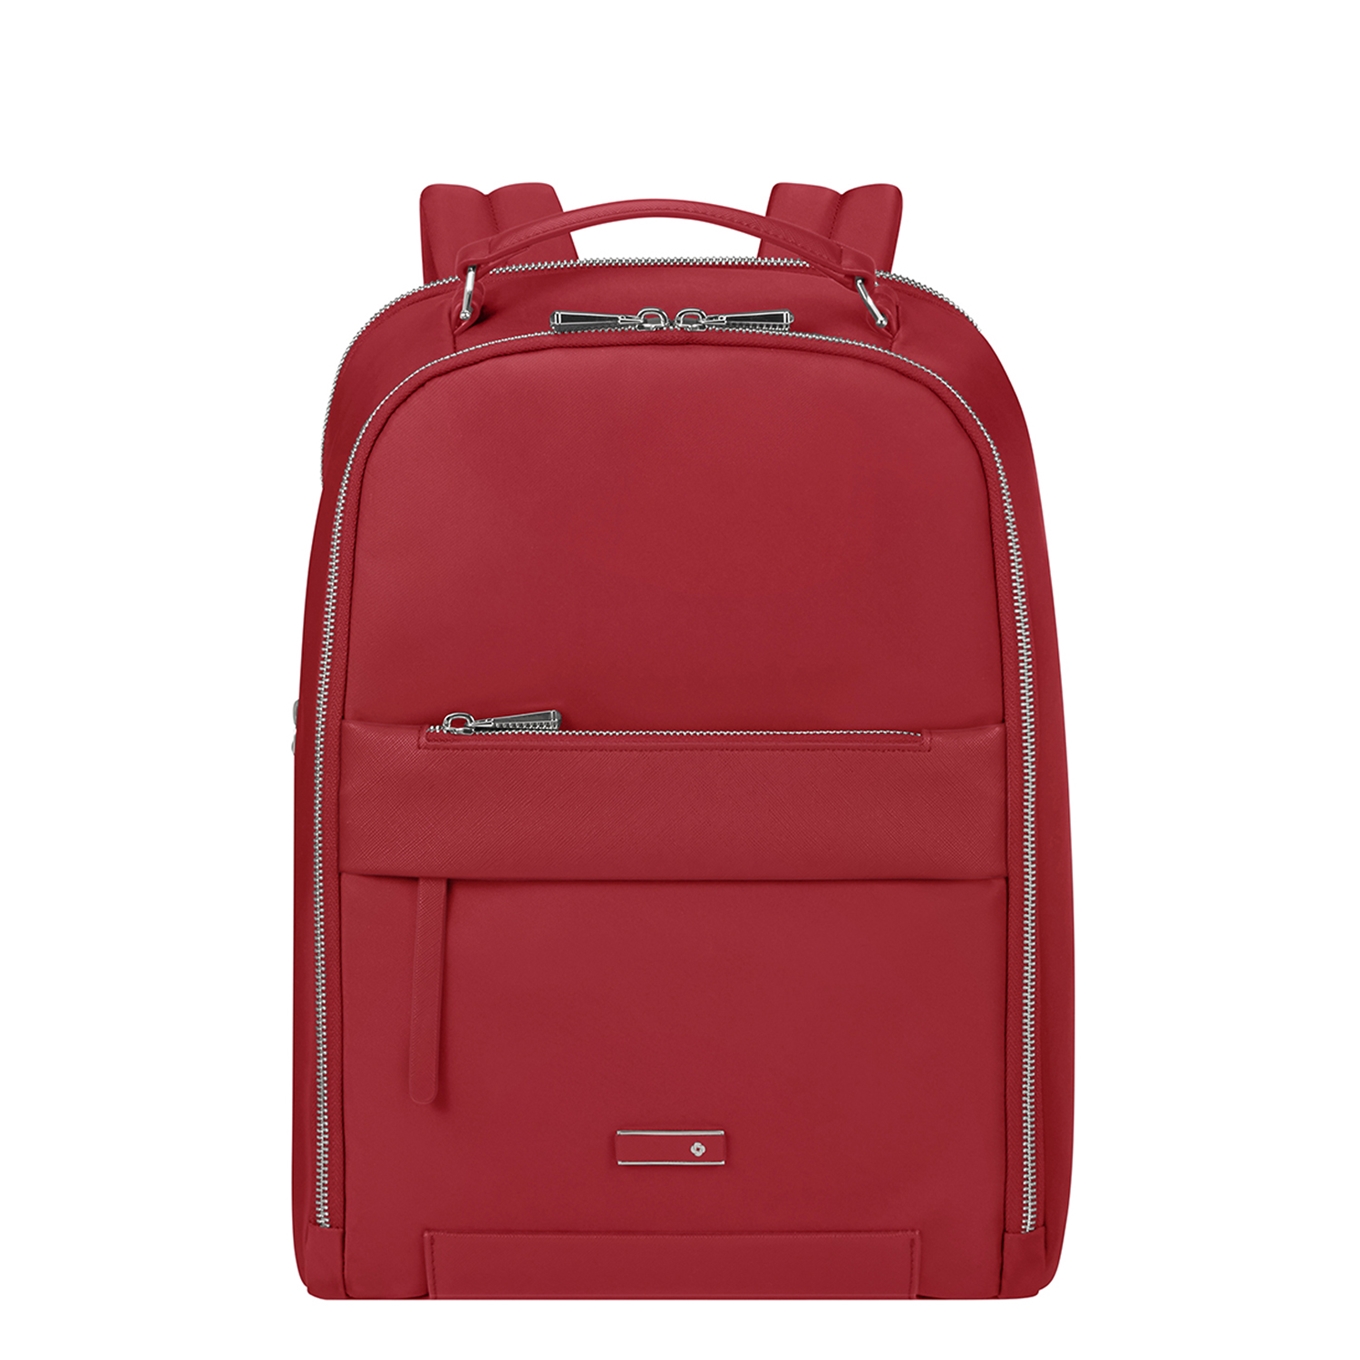 Samsonite Zalia 3.0 Backpack 14.1" dark red backpack